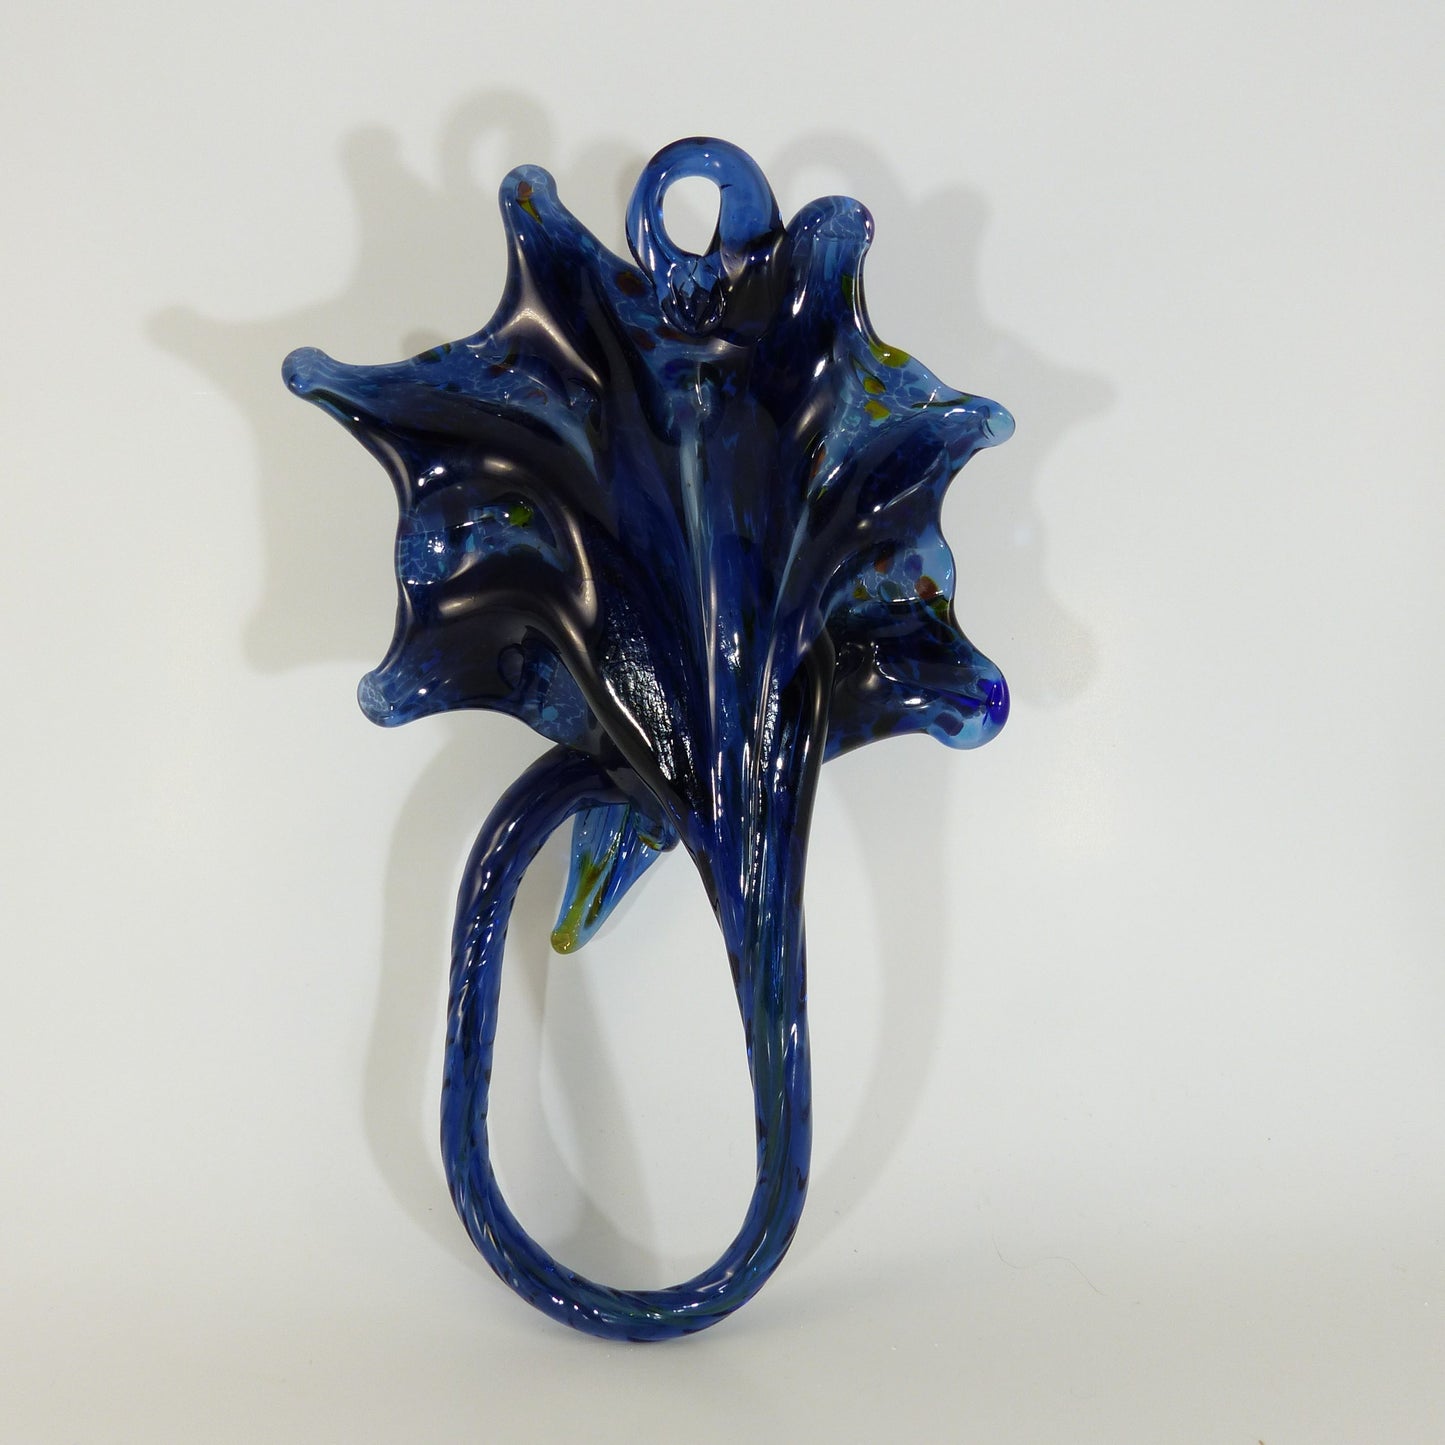 Blue Hummingbird Glass Sculpture Sun catcher